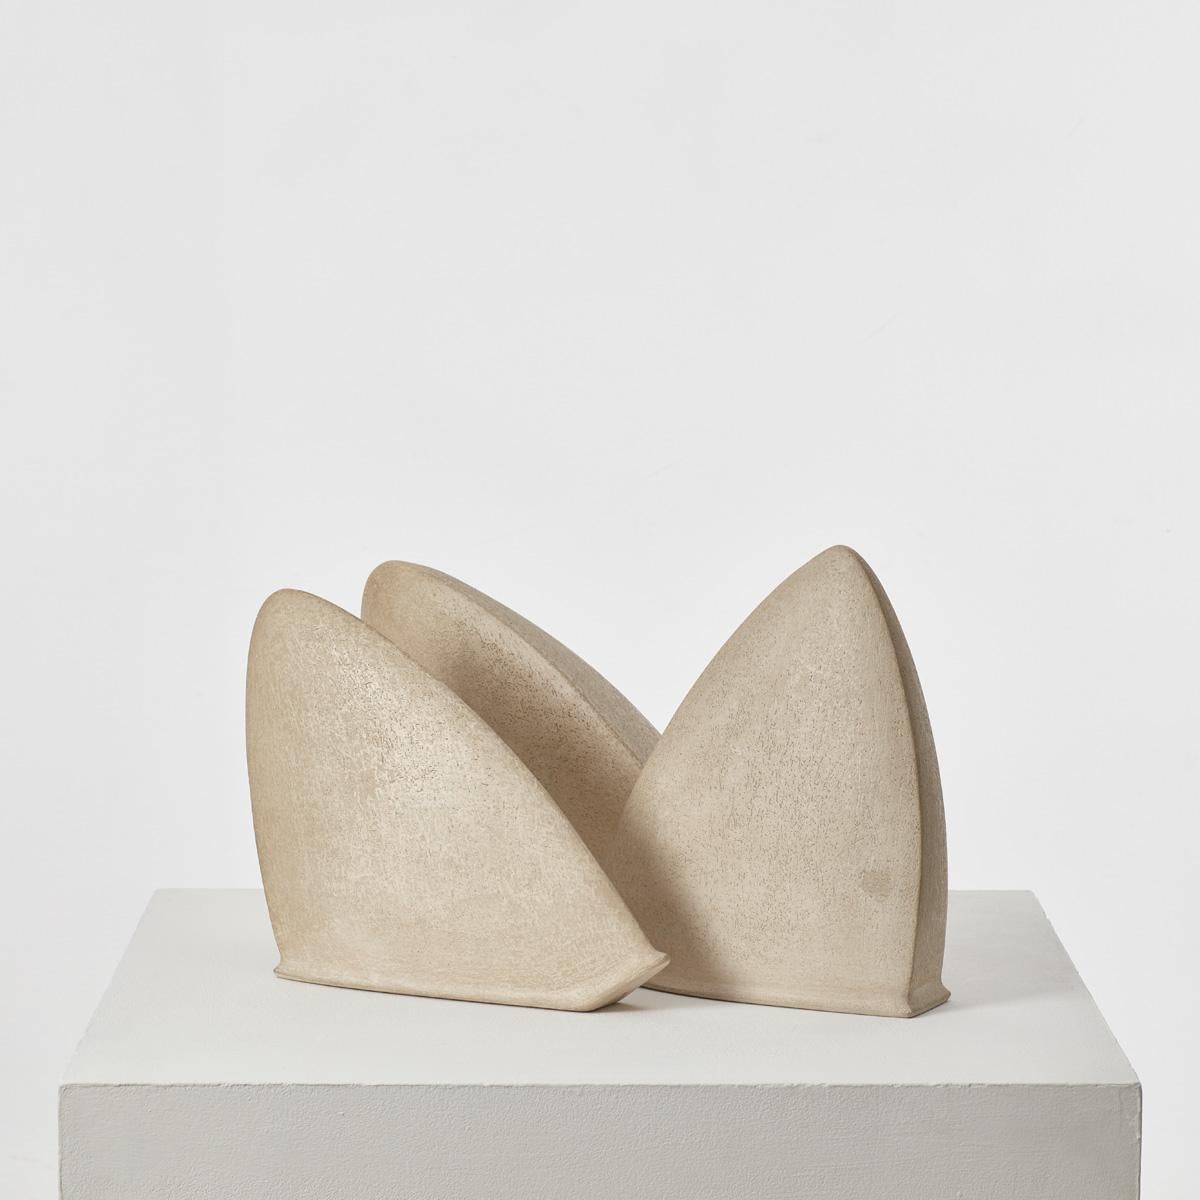 Eine Gruppe von drei abstrakten Skulpturen mit sanft rhythmischen, biomorphen Formen, die zuvor im Besitz von Sir Terence Conran (1931 - 2020) waren. Conran, ein unnachahmlicher Designpionier und Geschäftsmann, 